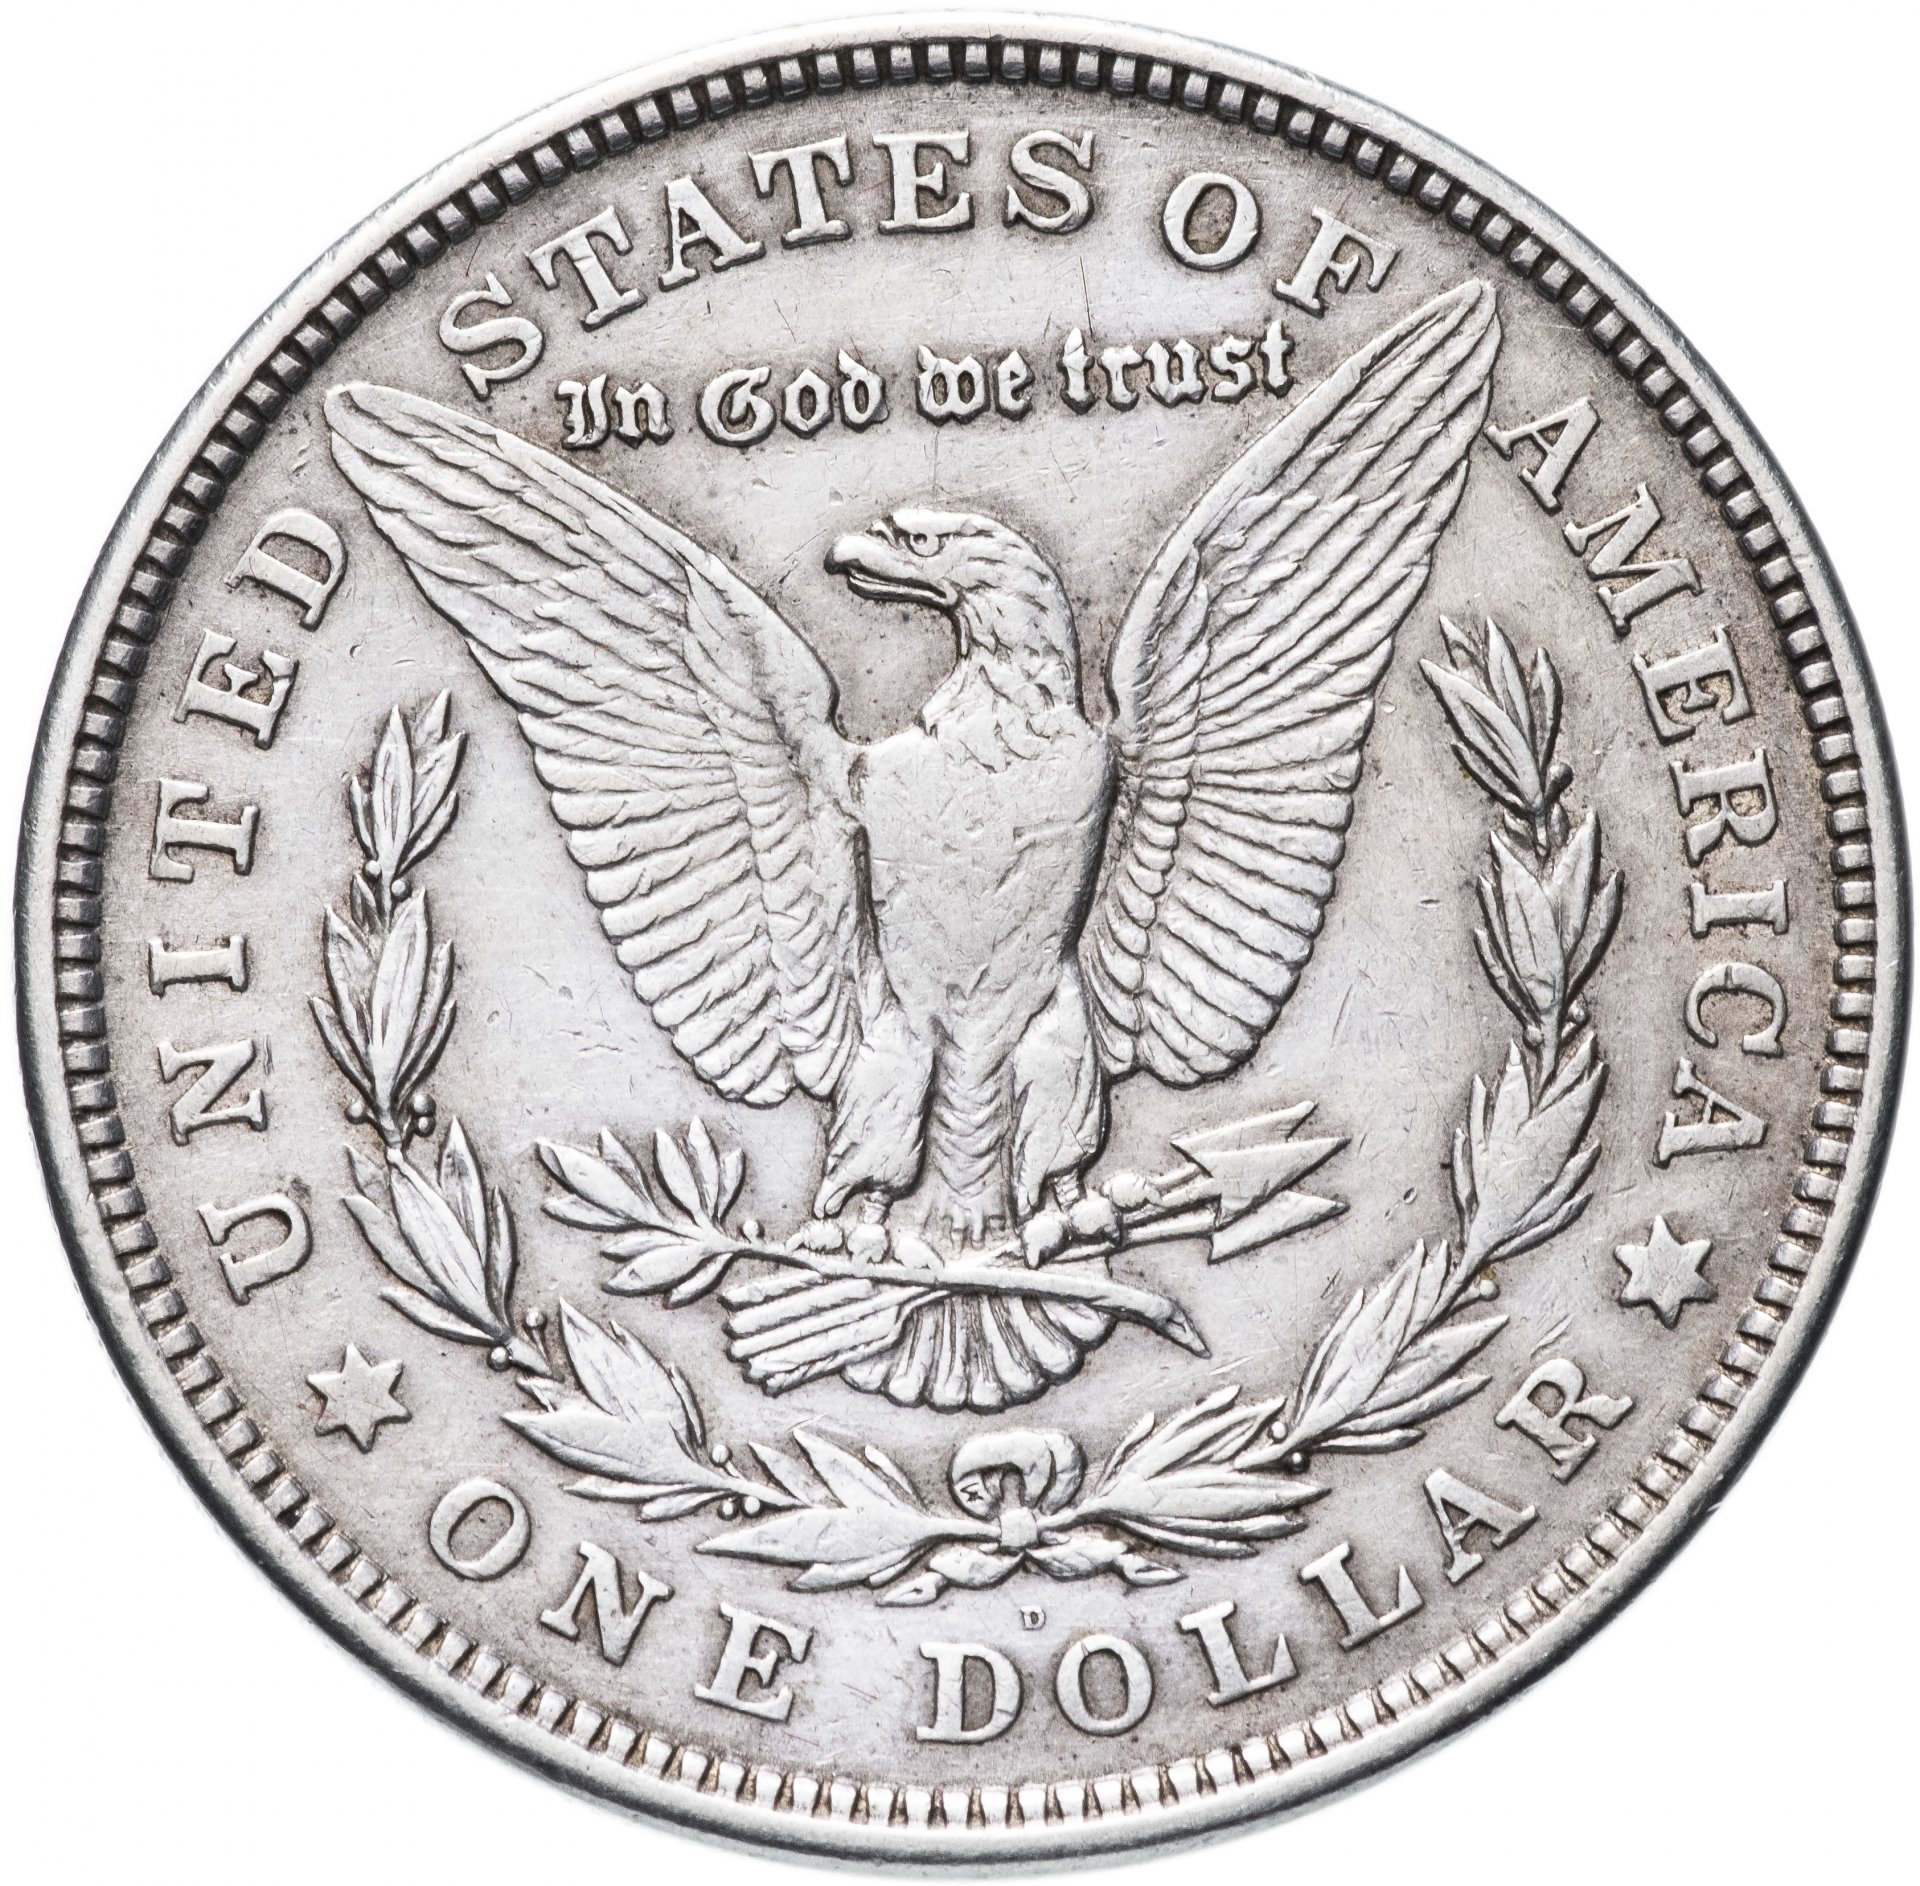 Нашел 1 доллар. 1 Доллар США. Доллар США 1921 года Морган серебро. Американский доллар. Один американский доллар.